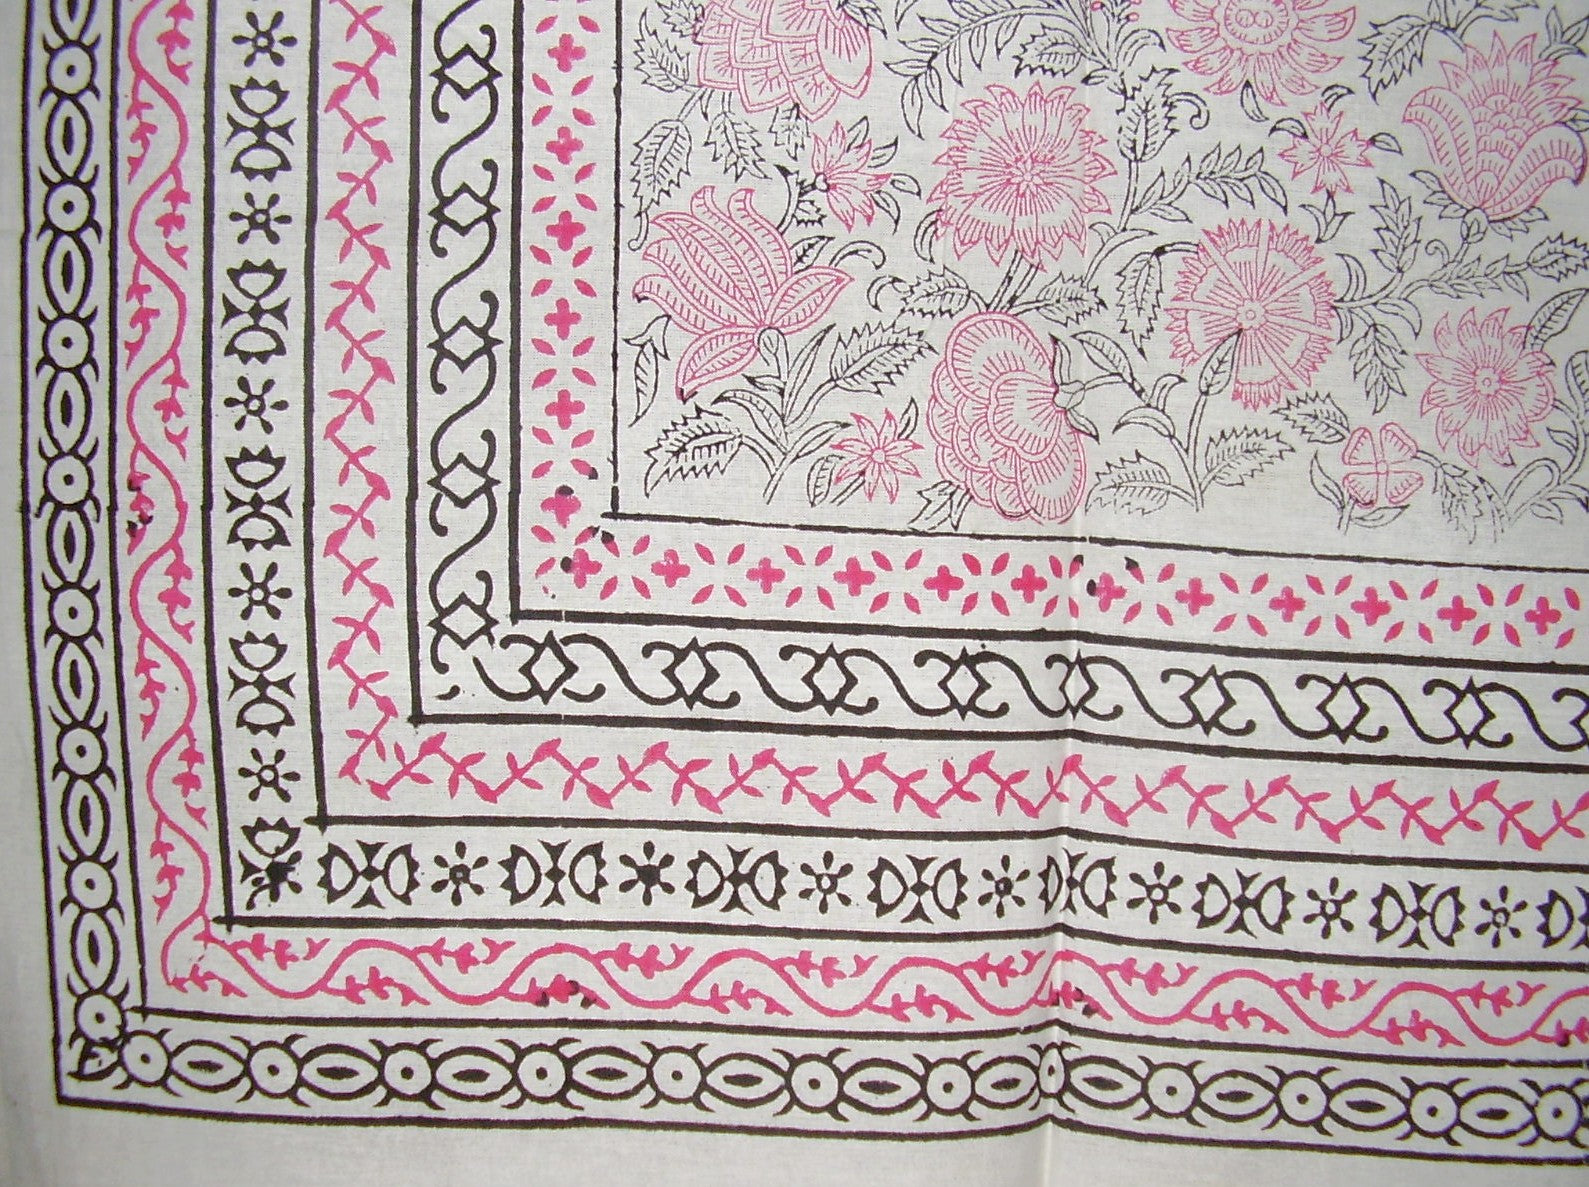 花卉块印花挂毯棉质床罩 106 英寸 x 70 英寸双粉色